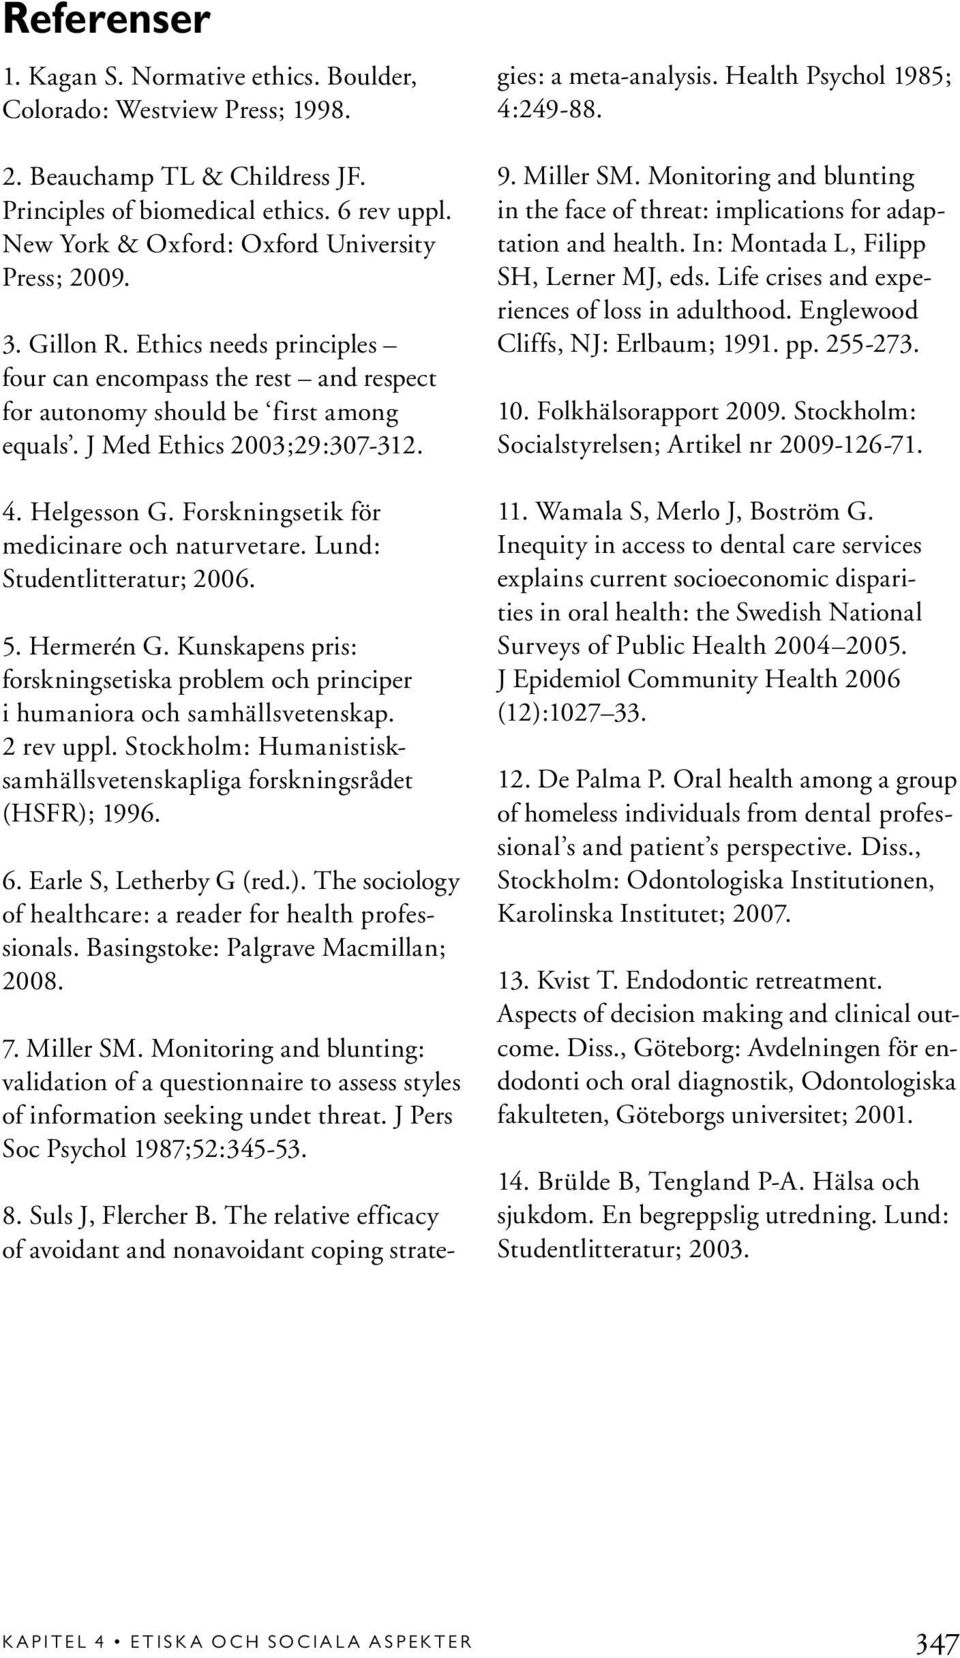 4. Helgesson G. Forskningsetik för medicinare och naturvetare. Lund: Studentlitteratur; 2006. 5. Hermerén G. Kunskapens pris: forskningsetiska problem och principer i humaniora och samhällsvetenskap.